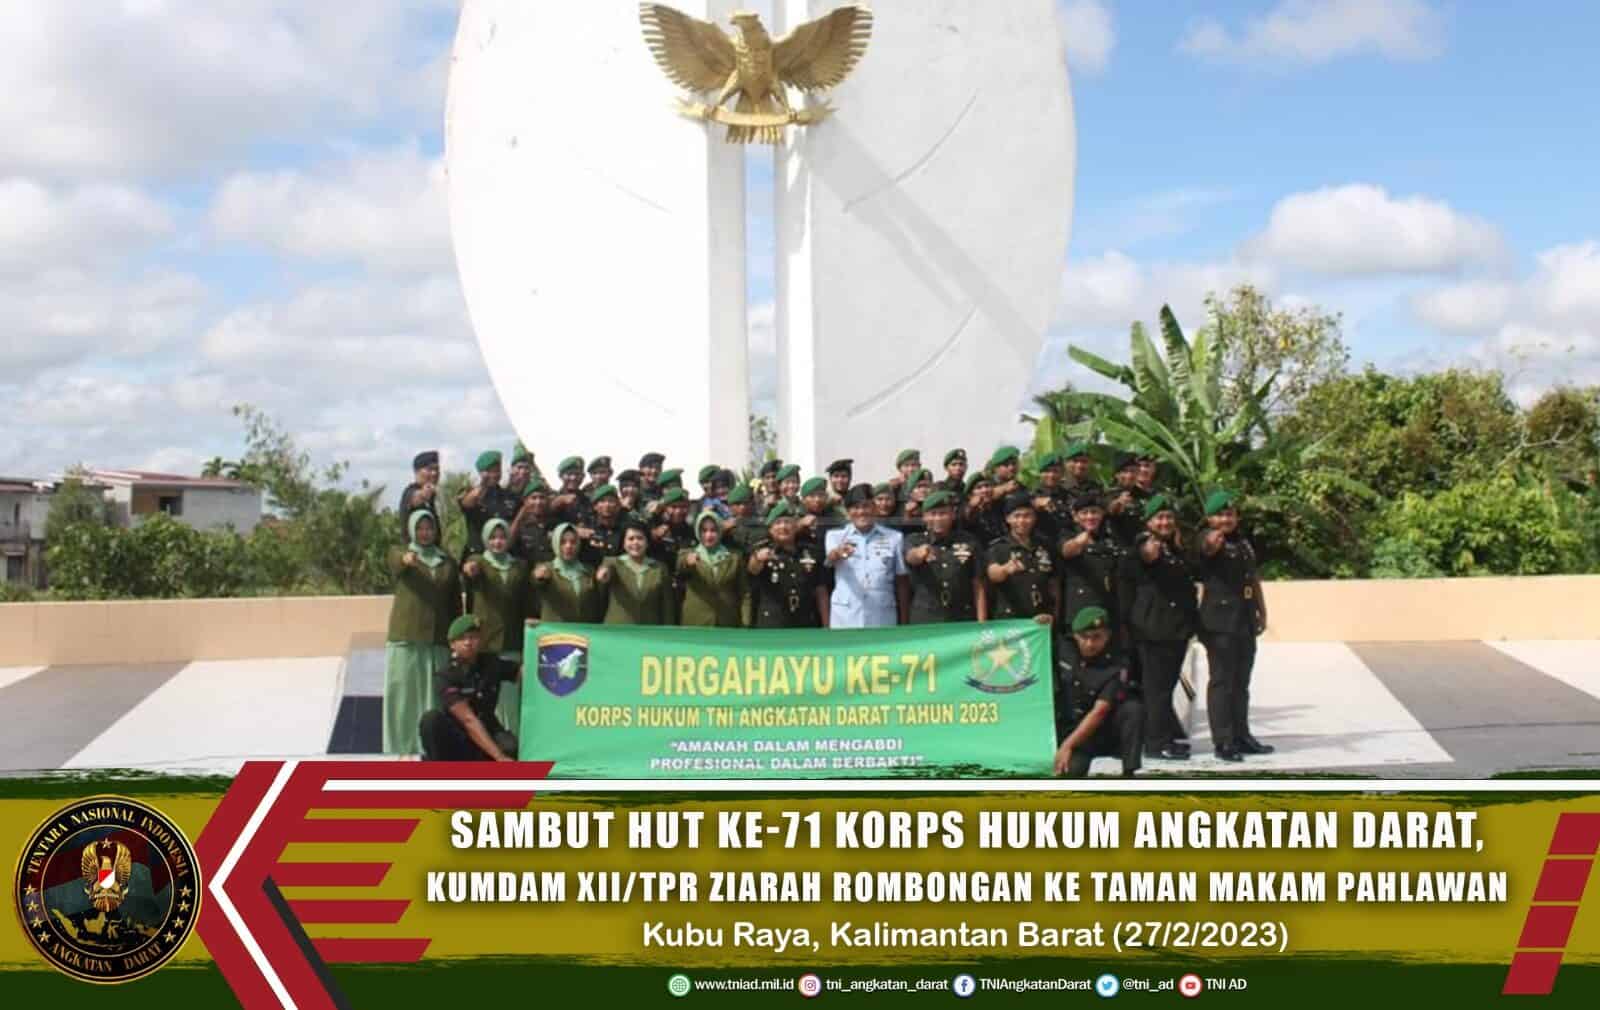 Sambut HUT ke-71 Korps Hukum Angkatan Darat, Kumdam XII/Tpr Ziarah Rombongan ke Taman Makam Pahlawan